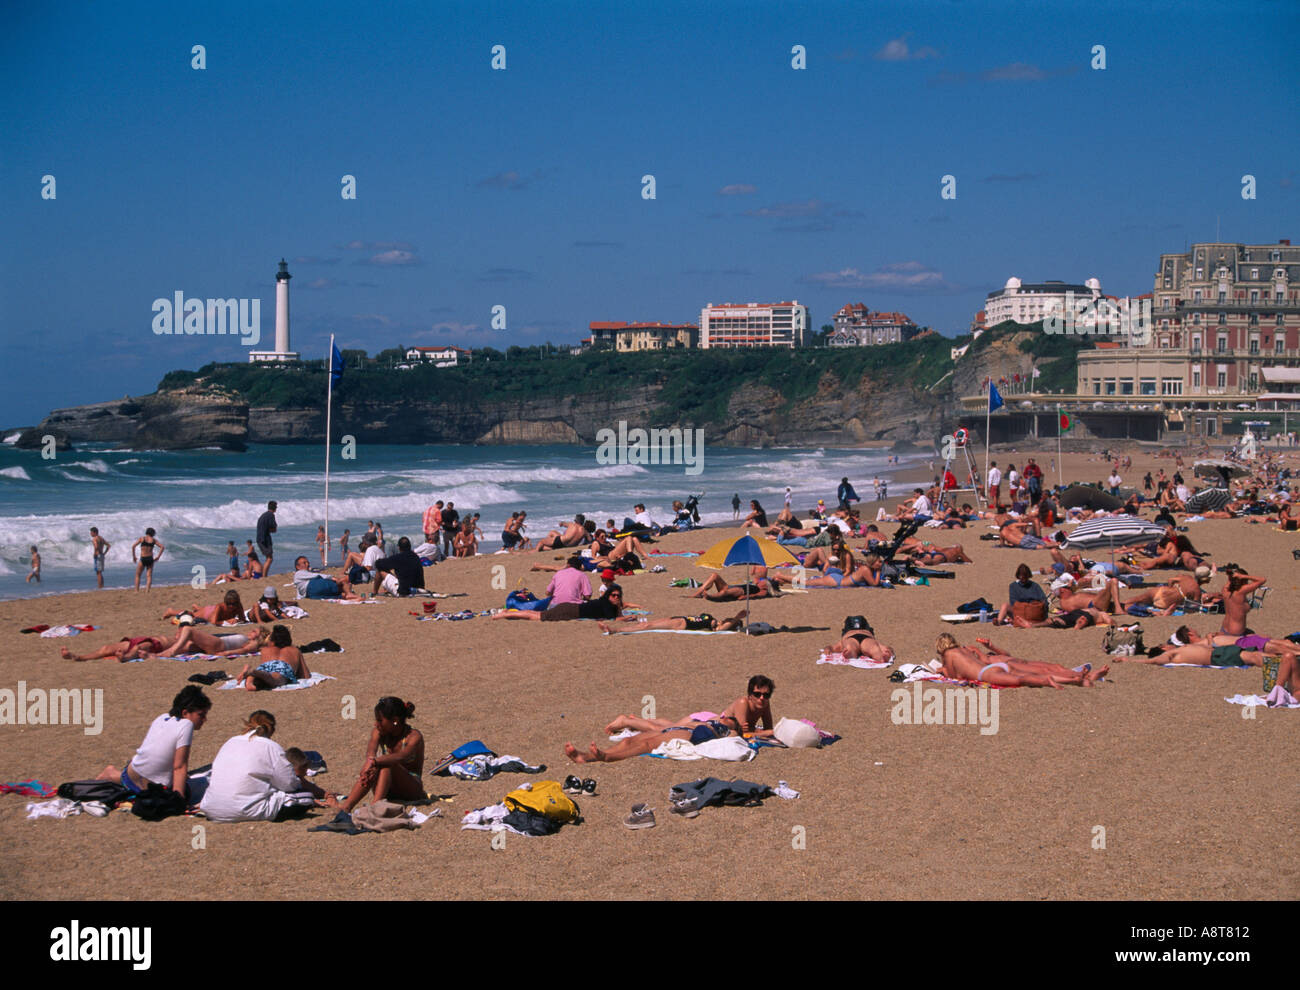 La grande plage at Biarritz in September Stock Photo